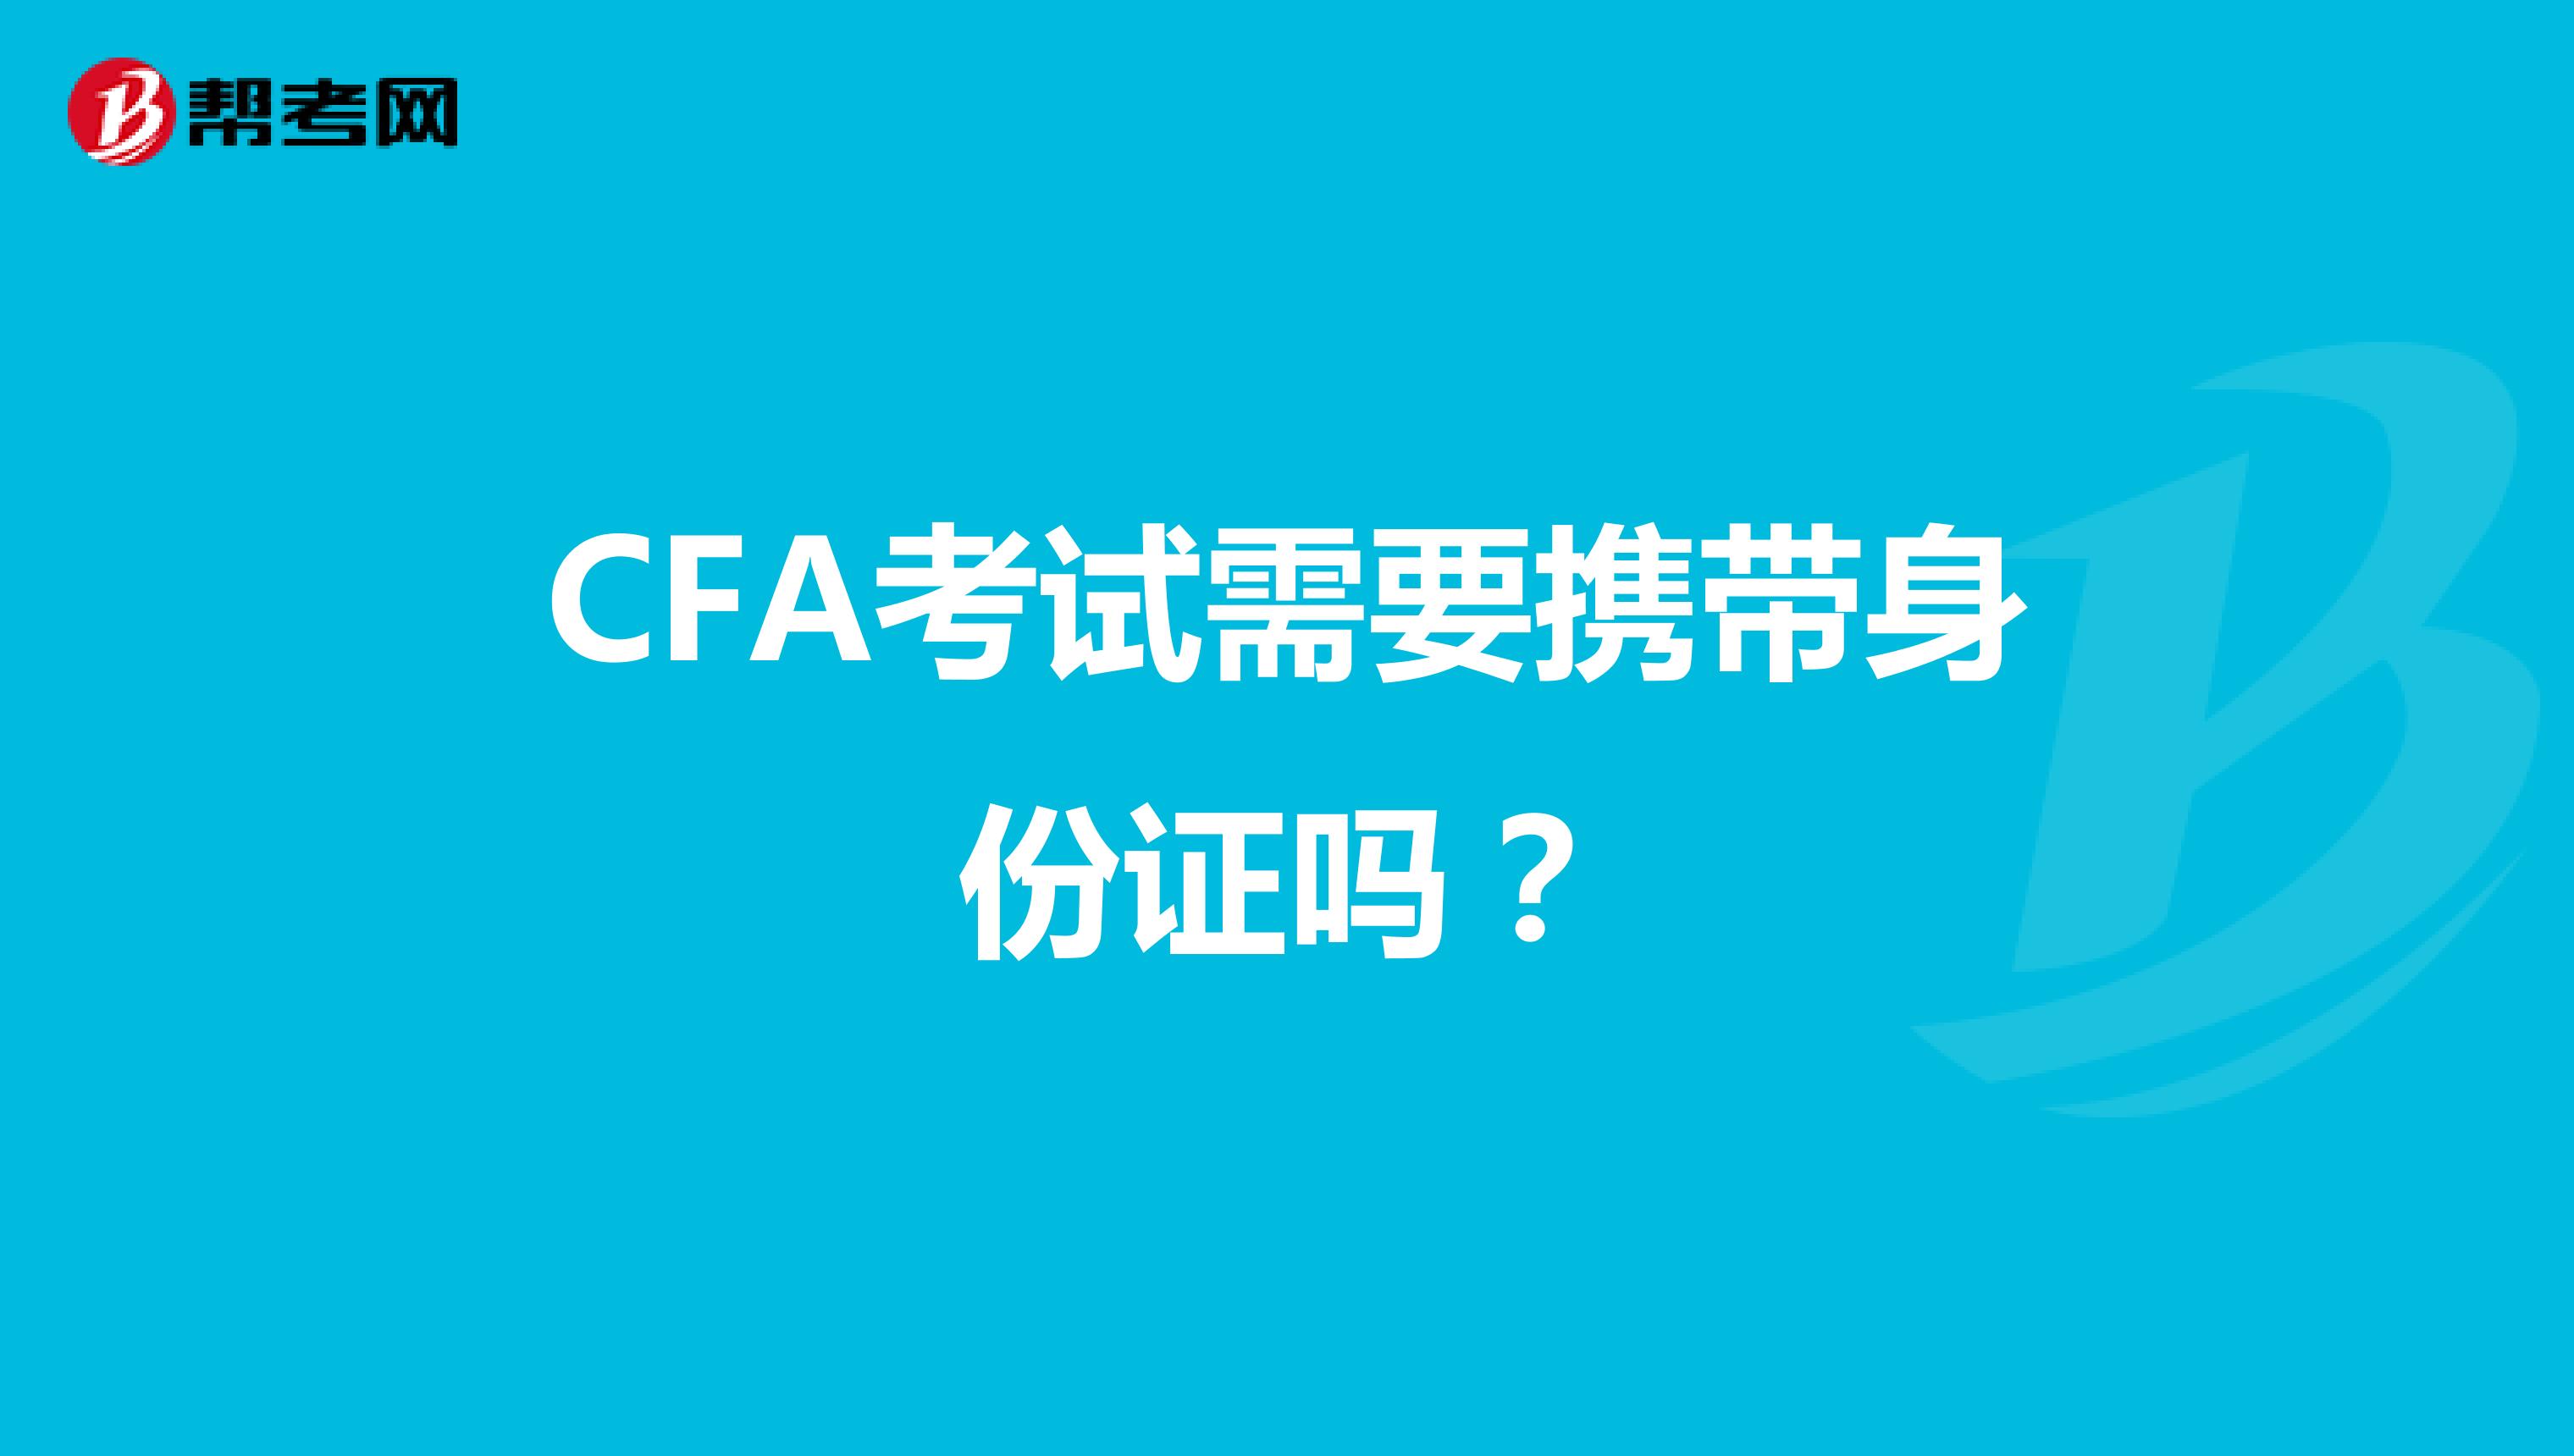 CFA考试需要携带身份证吗？